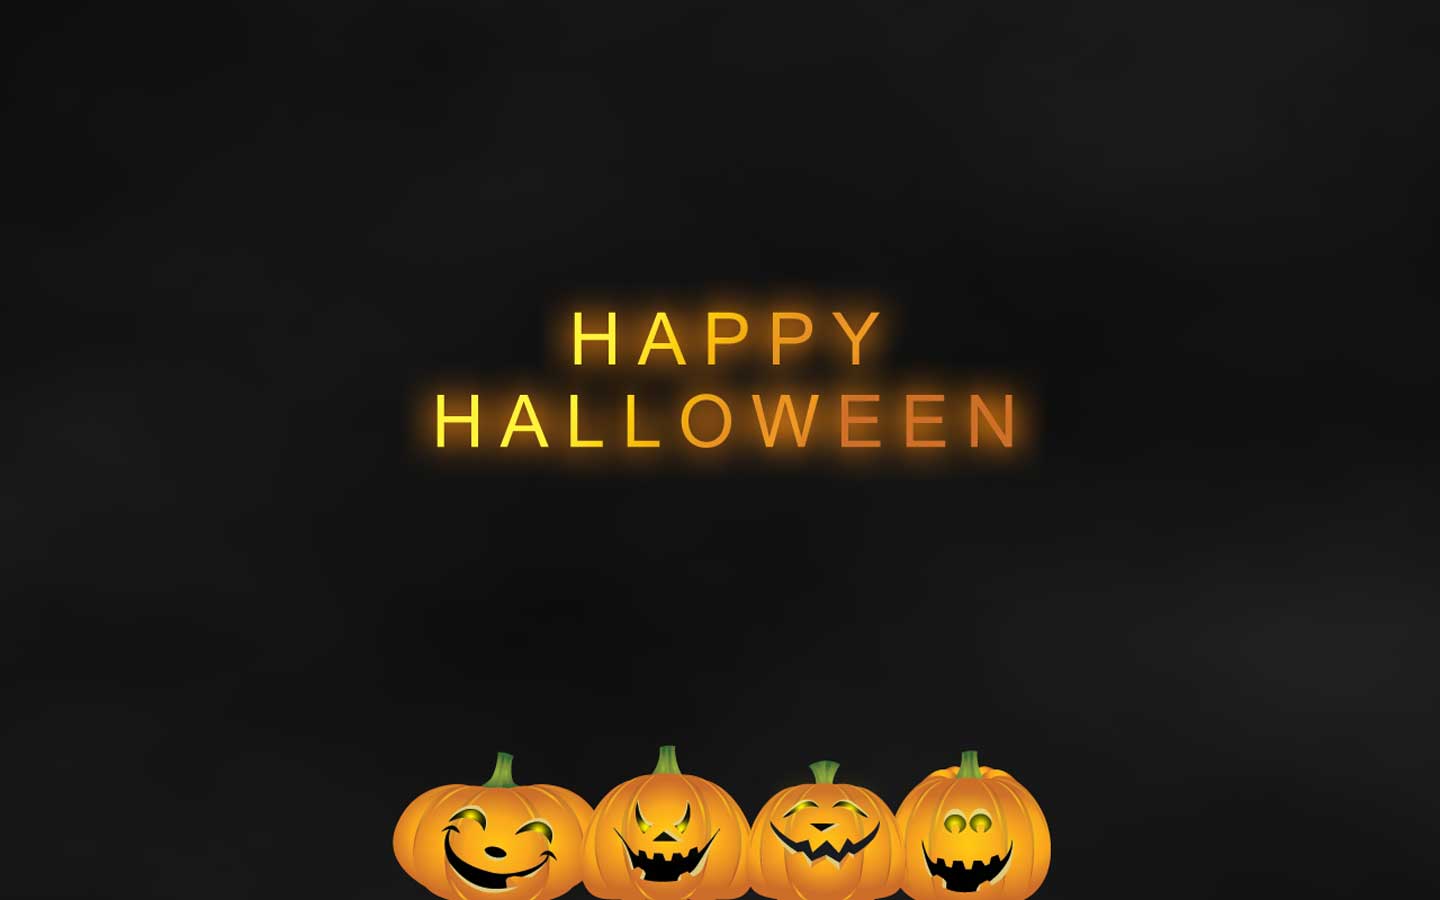 Free download happy halloween wallpaper desktop [1440x900] for your Desktop, Mobile & Tablet. Explore Halloween Wallpaper for My Desktop. Free Halloween Desktop Wallpaper Screens, Halloween Wallpaper, Free